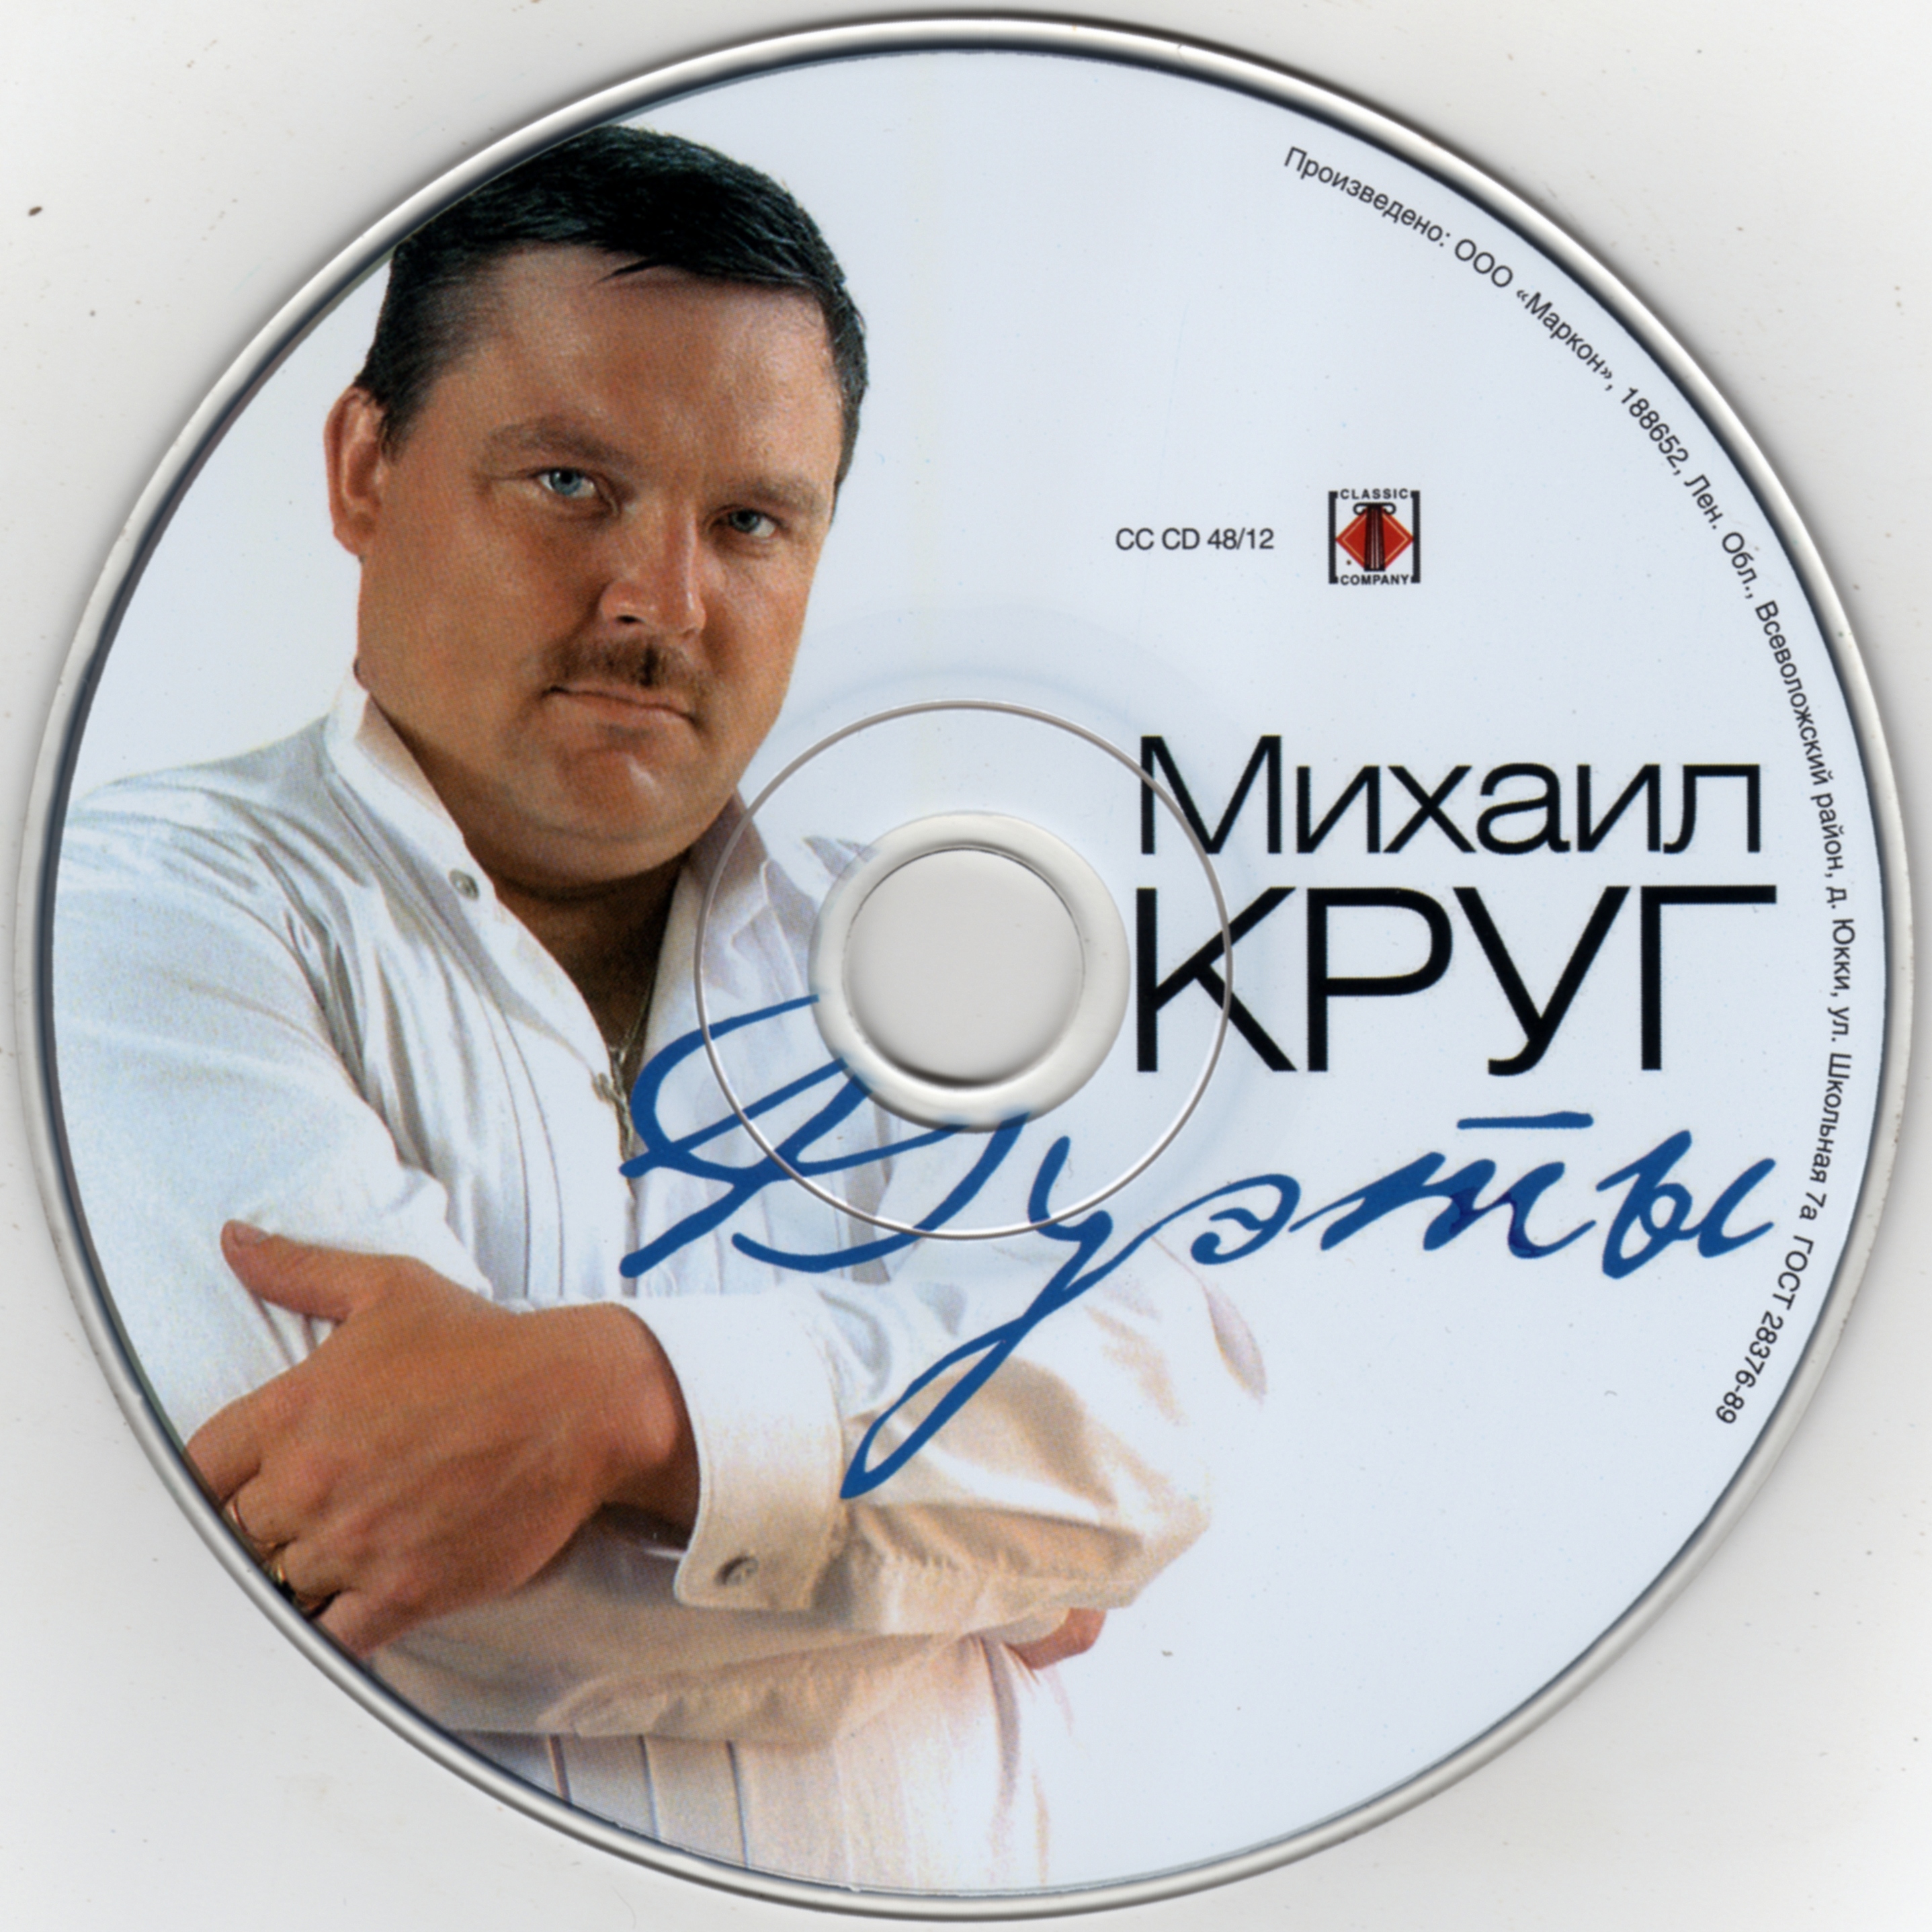 Михаил круг - дуэты / Mikhail krug - duety